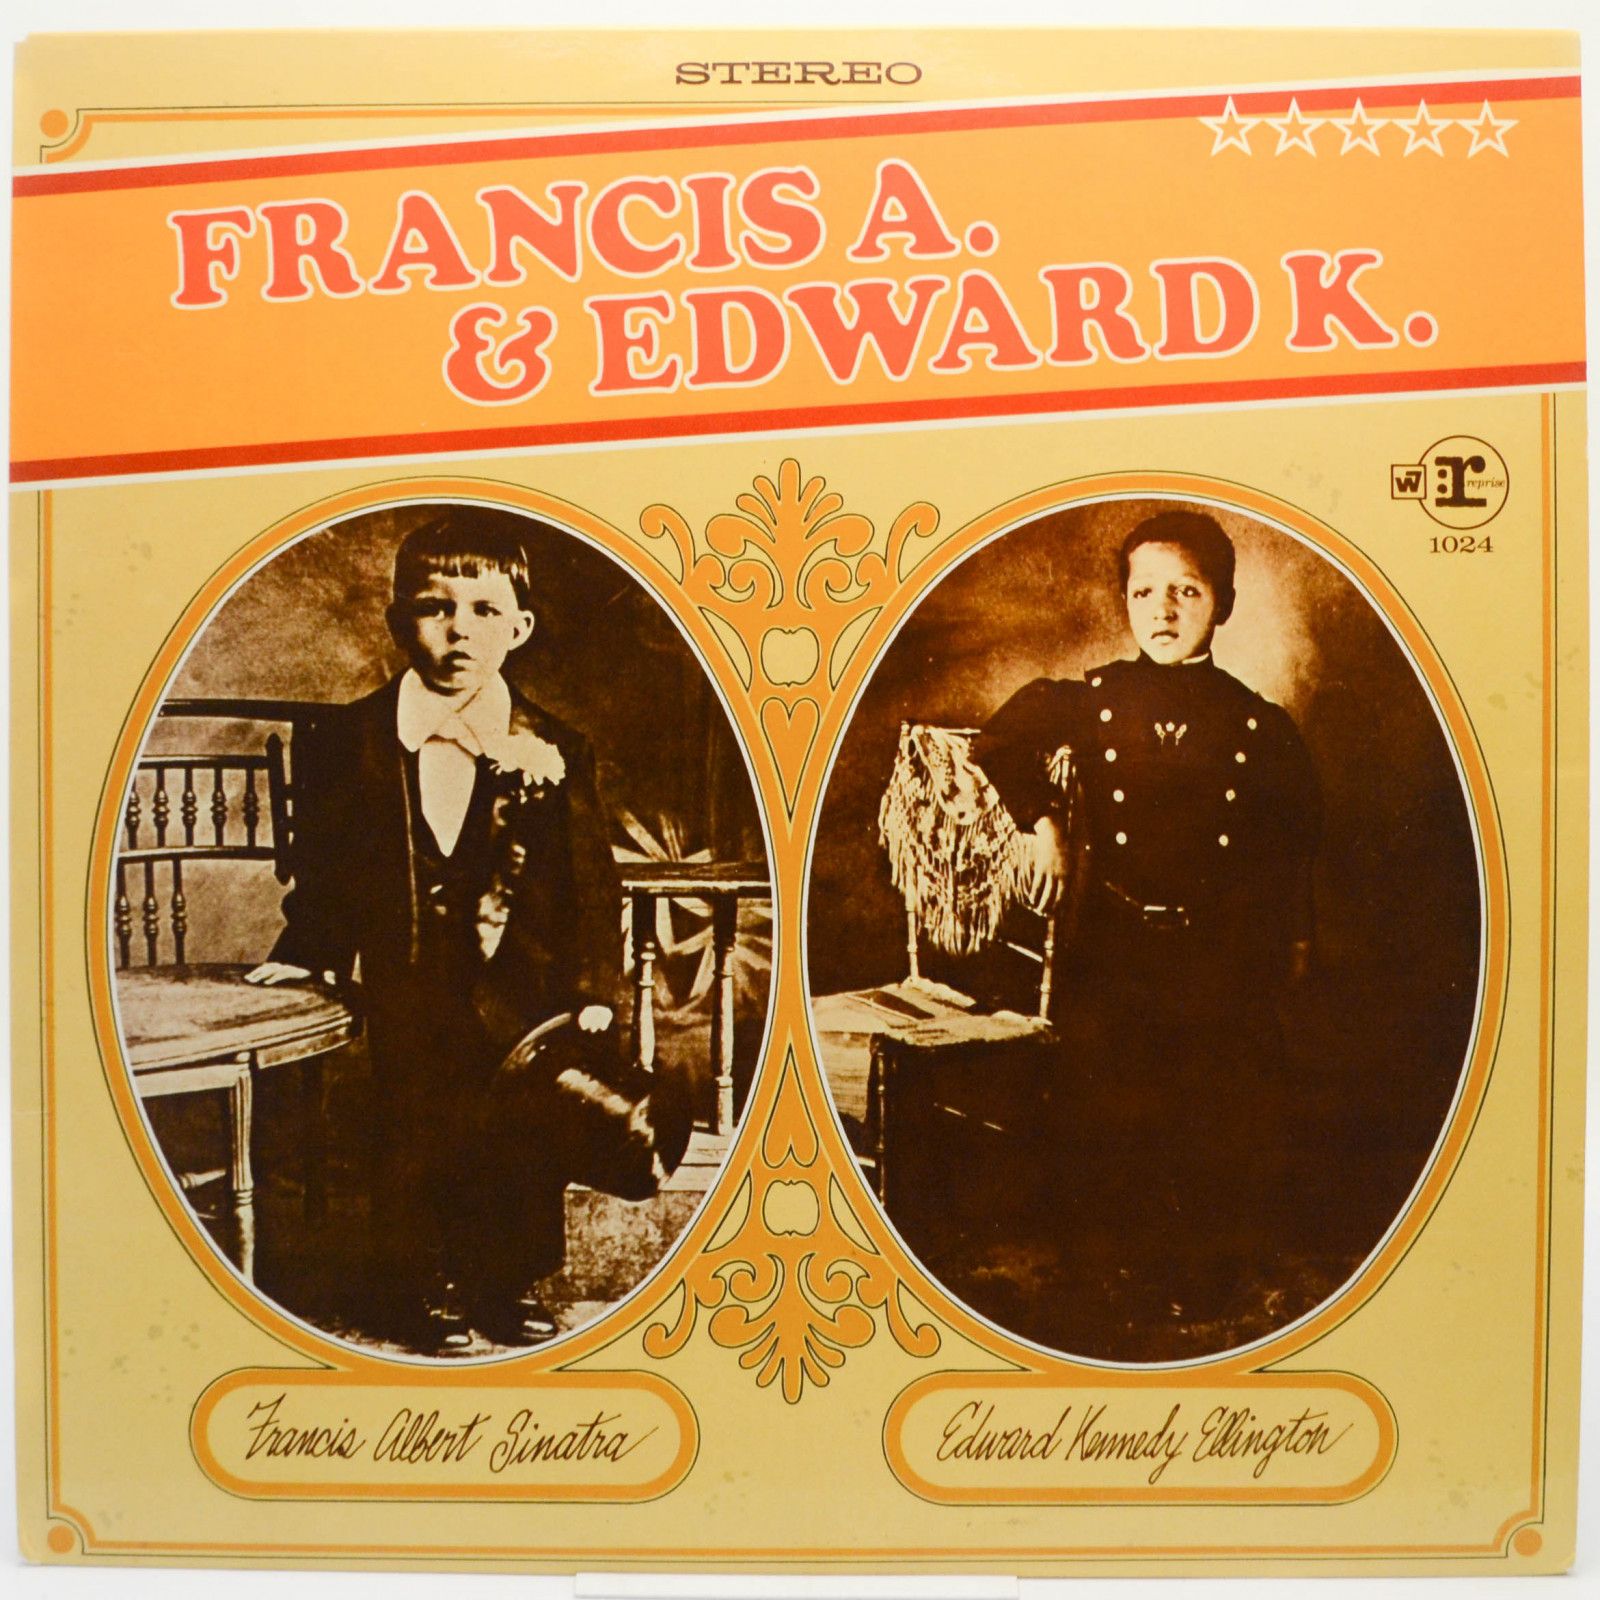 Francis Albert Sinatra, Edward Kennedy Ellington — Francis A. & Edward K., 1968